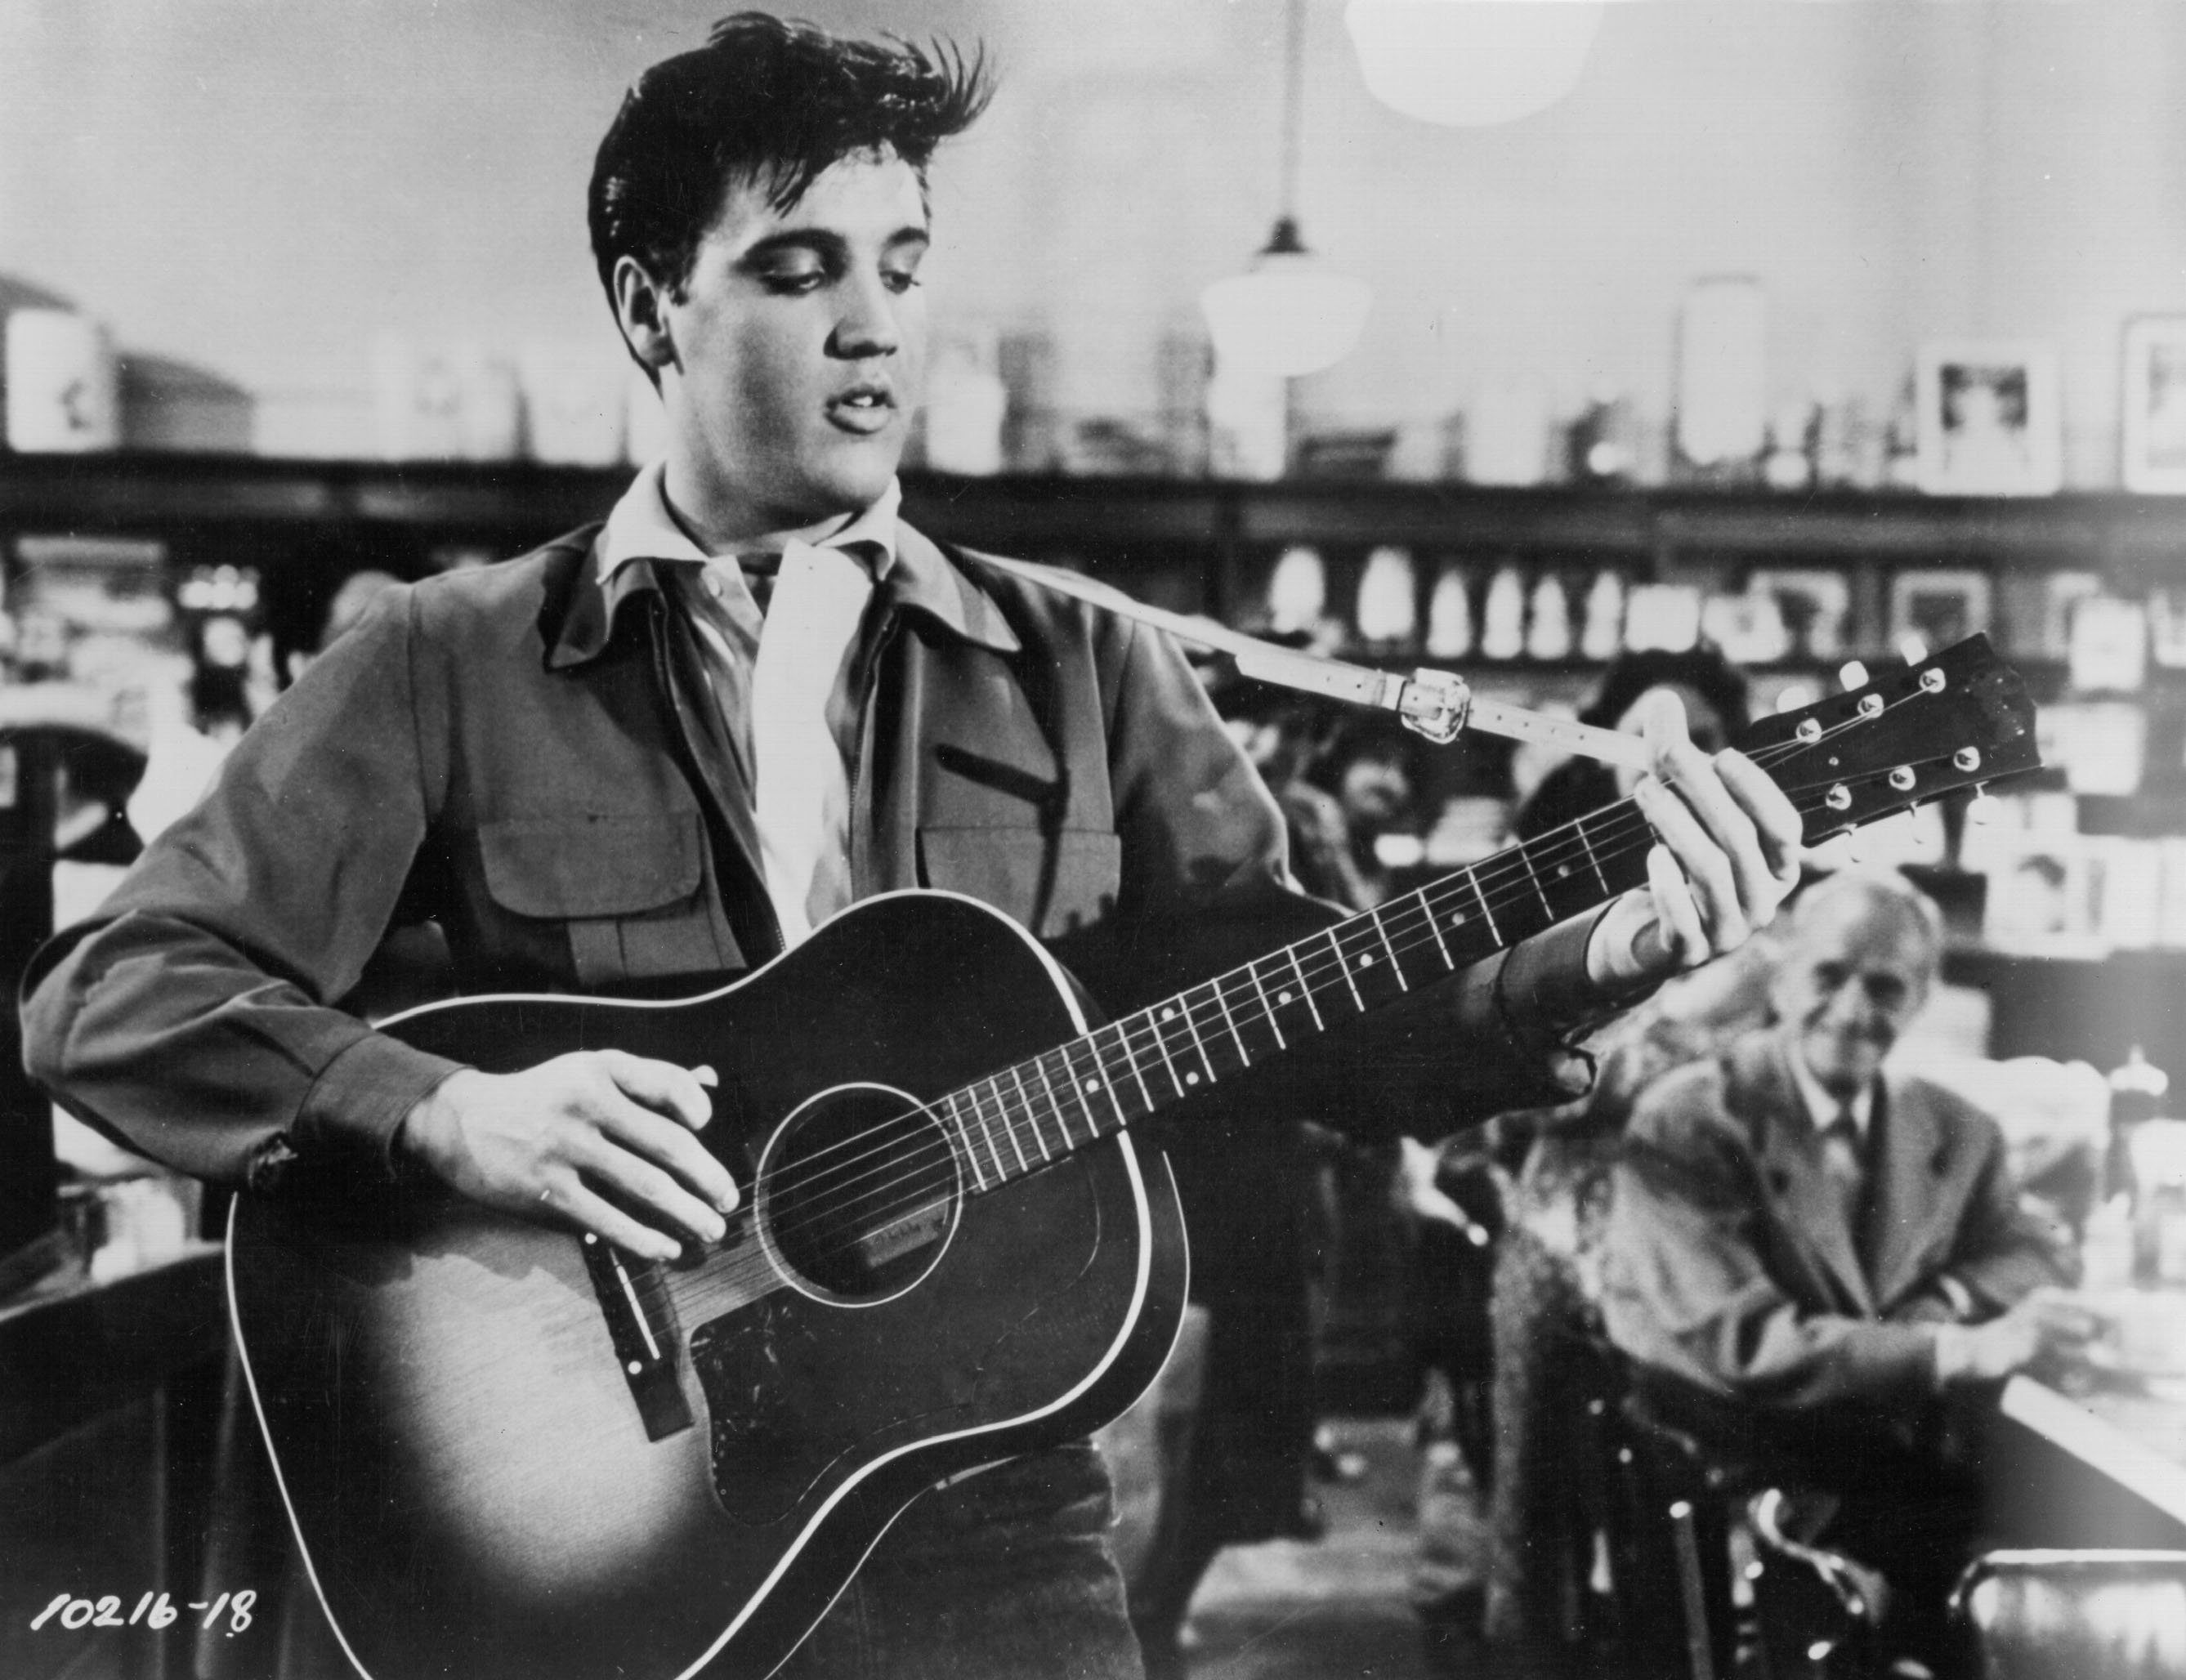 "Suspicious Minds" singer Elvis Presley holding a guitar